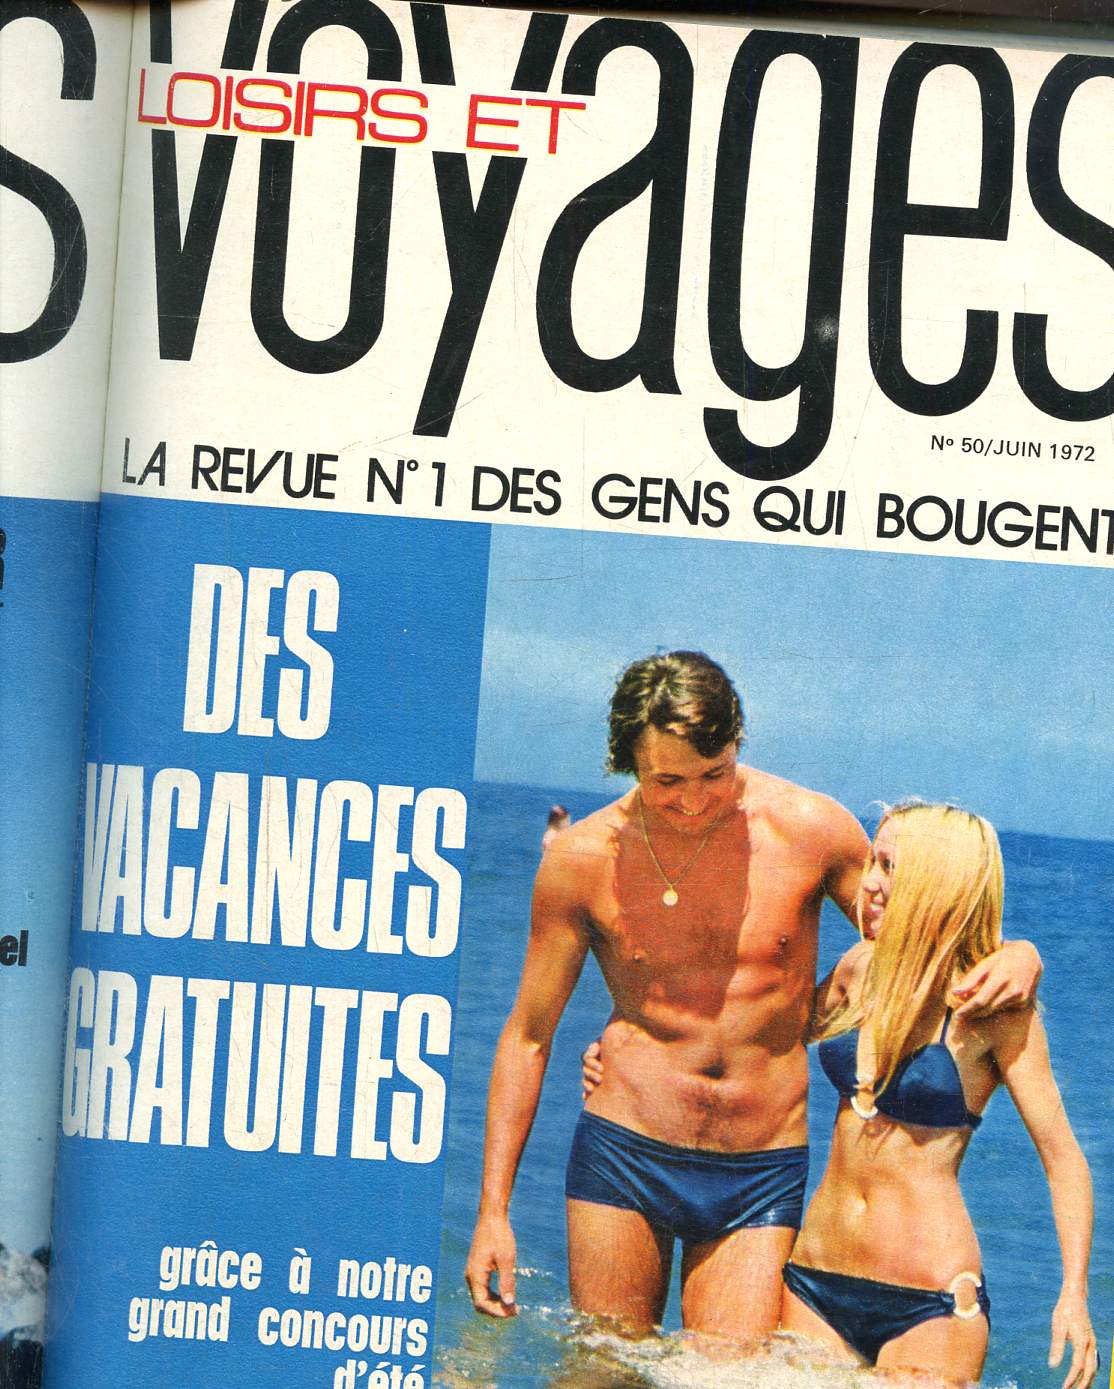 Loisirs et Voyages N 50, juin 1972- La revue N 1 des gens qui bougent : Des vacances gratuites grce  notre grand concours d't.